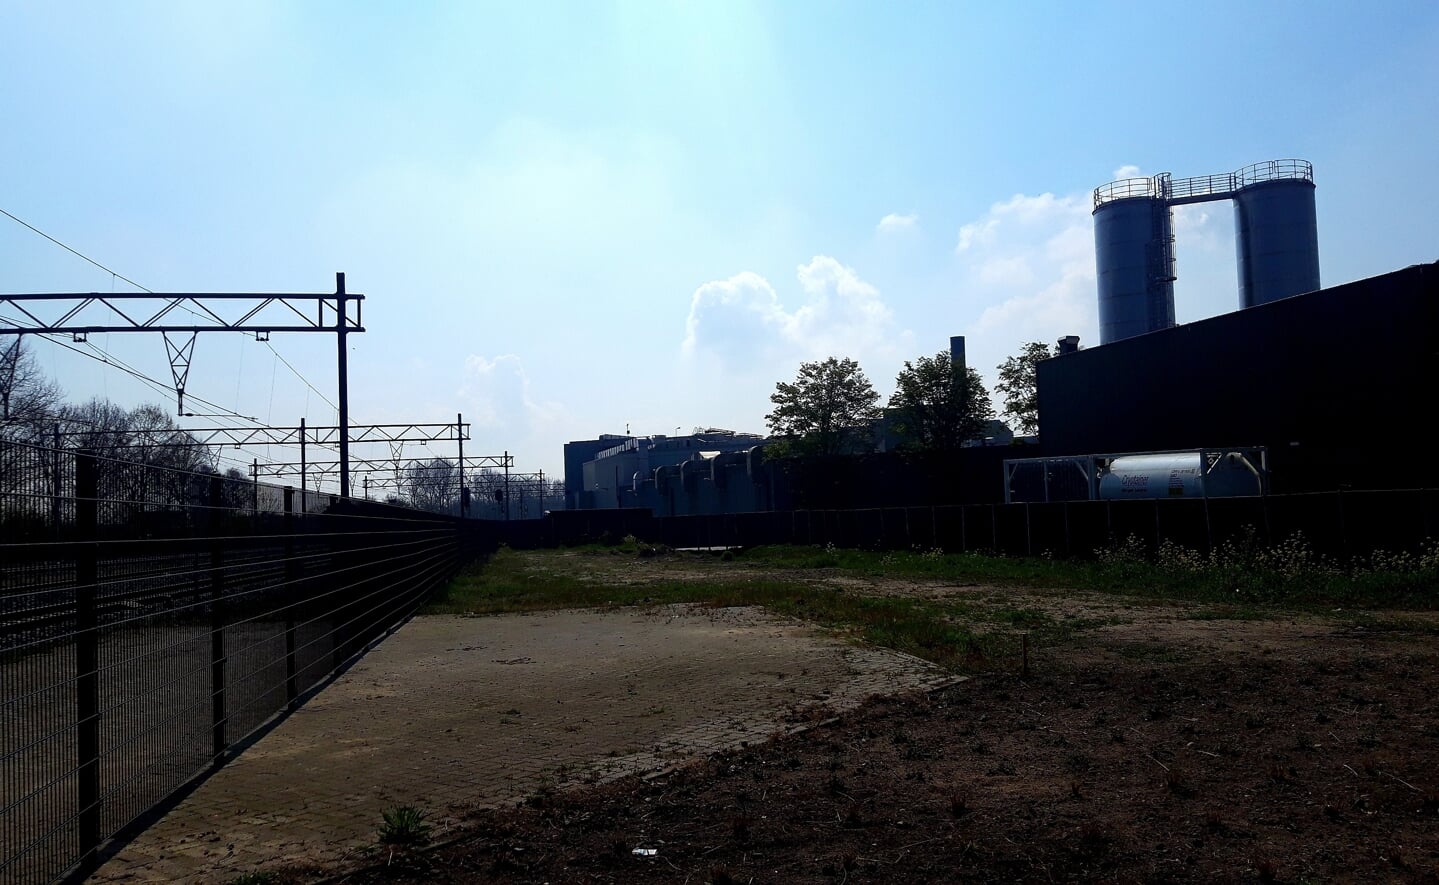 Varkensslachterij Vion plaatste anderhalve week geleden twee enorme silo's bij haar waterzuiveringsbedrijf HydroBusiness. Ze dienen als buffer om de extra hoeveelheid afvalwater op te slaan na de uitbreiding van het bedrijf. (Foto: Henk van Weert). 